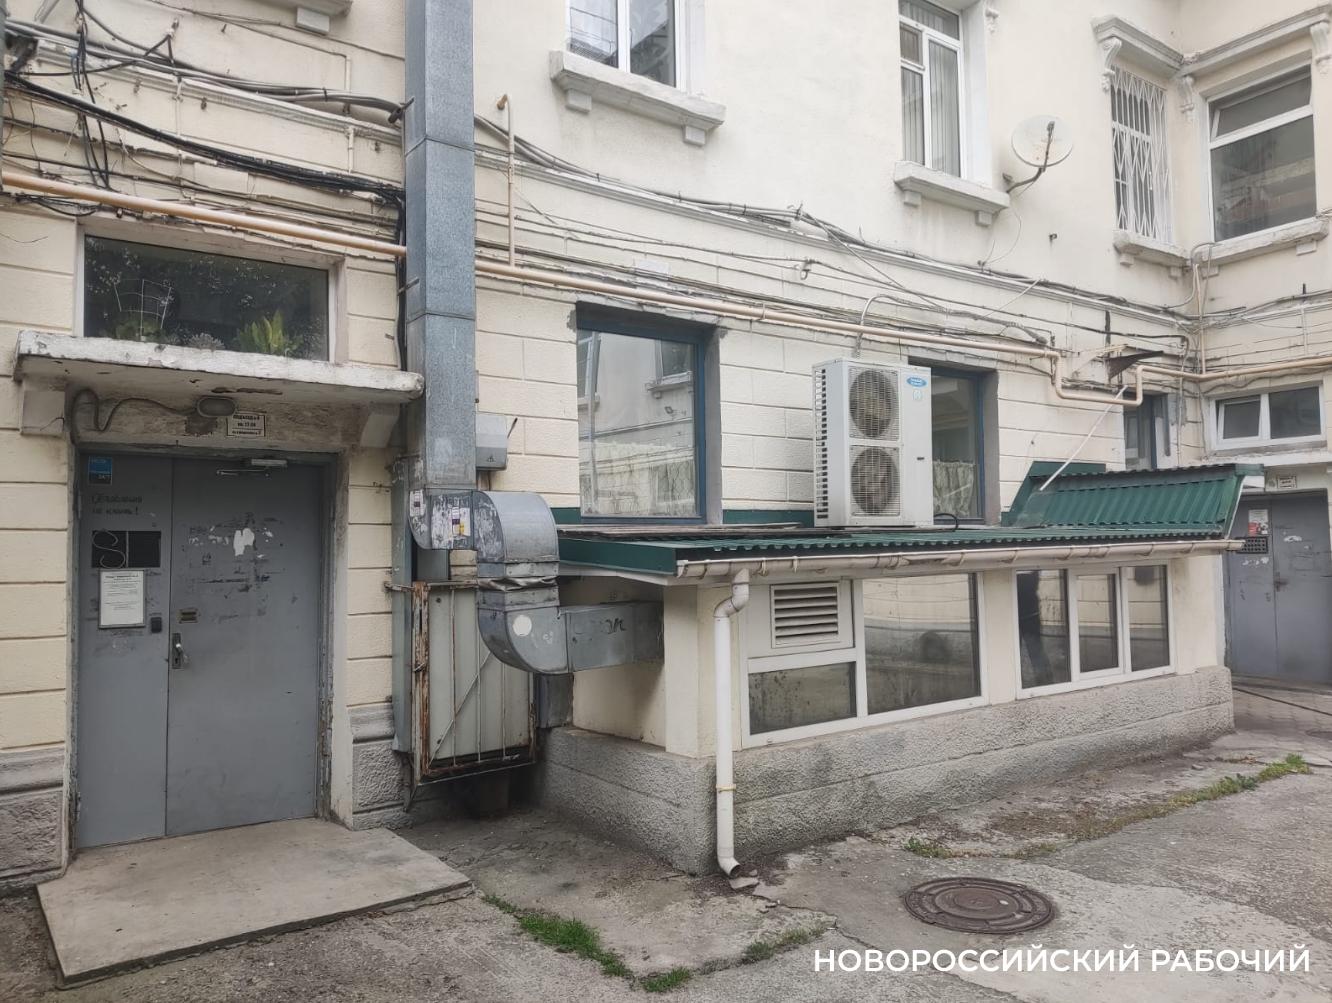 Соседство с общепитом не дает покоя пенсионерке из Новороссийска